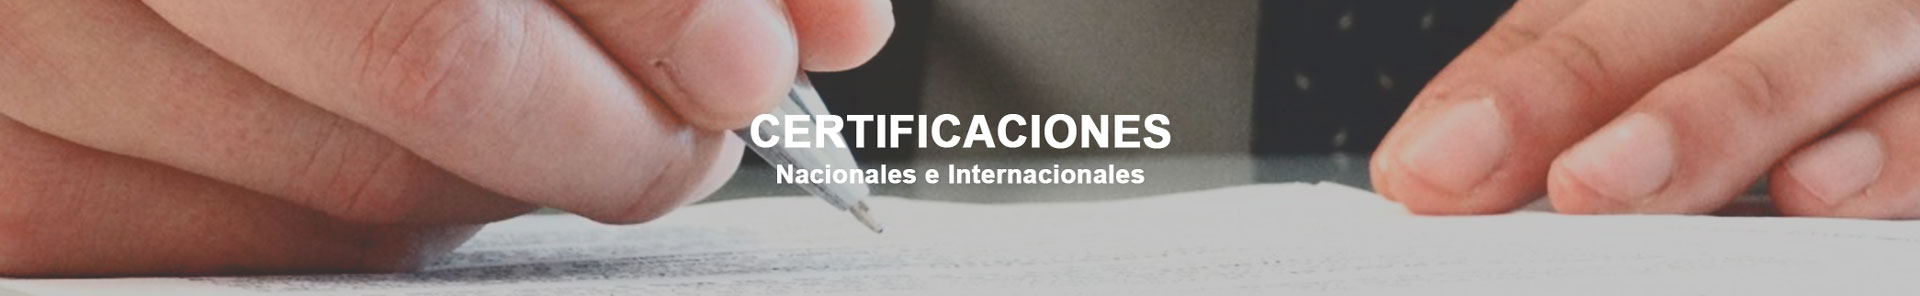 Certificaciones Nacionales e Internacionales